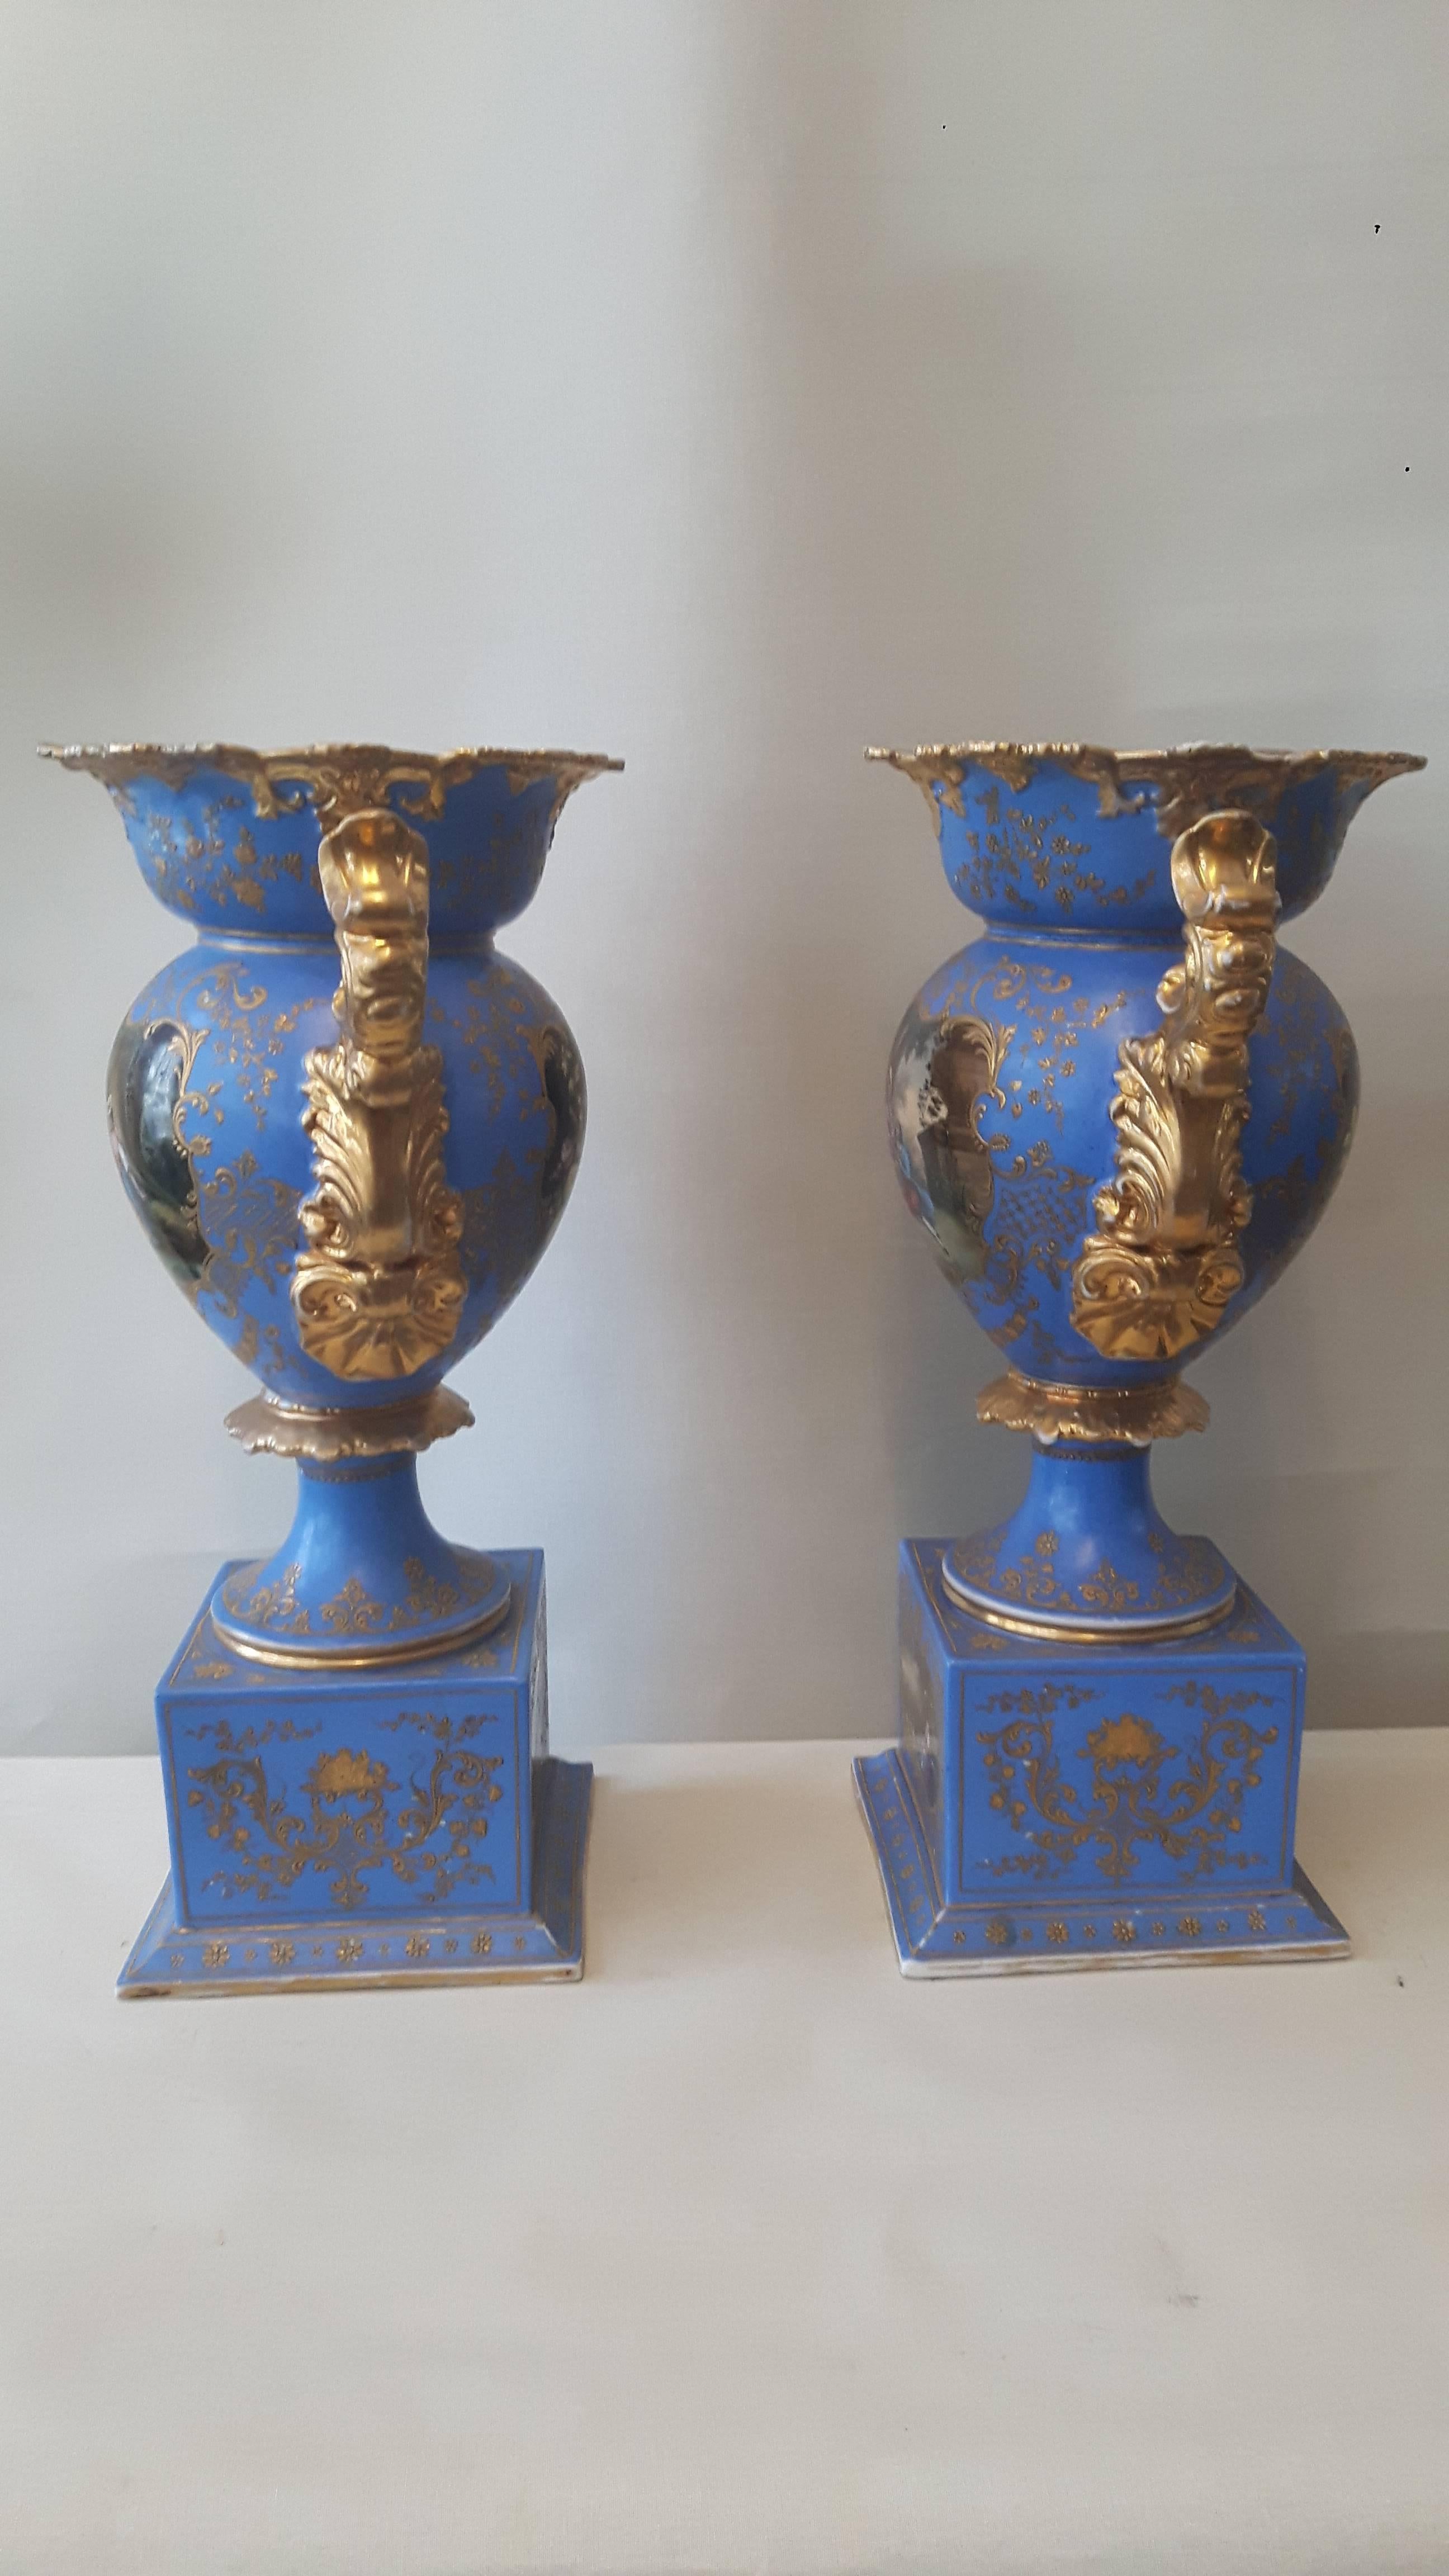 Ein Paar Kaminsimsvasen von Napoleon III. im Stil des achtzehnten Jahrhunderts, aufwendig dekoriert und vergoldet auf einem Hintergrund in Bleu de Ciel:. Jede Vase ist mit zwei Tafeln verziert, eine mit eleganten Blumenbouquets, die andere mit